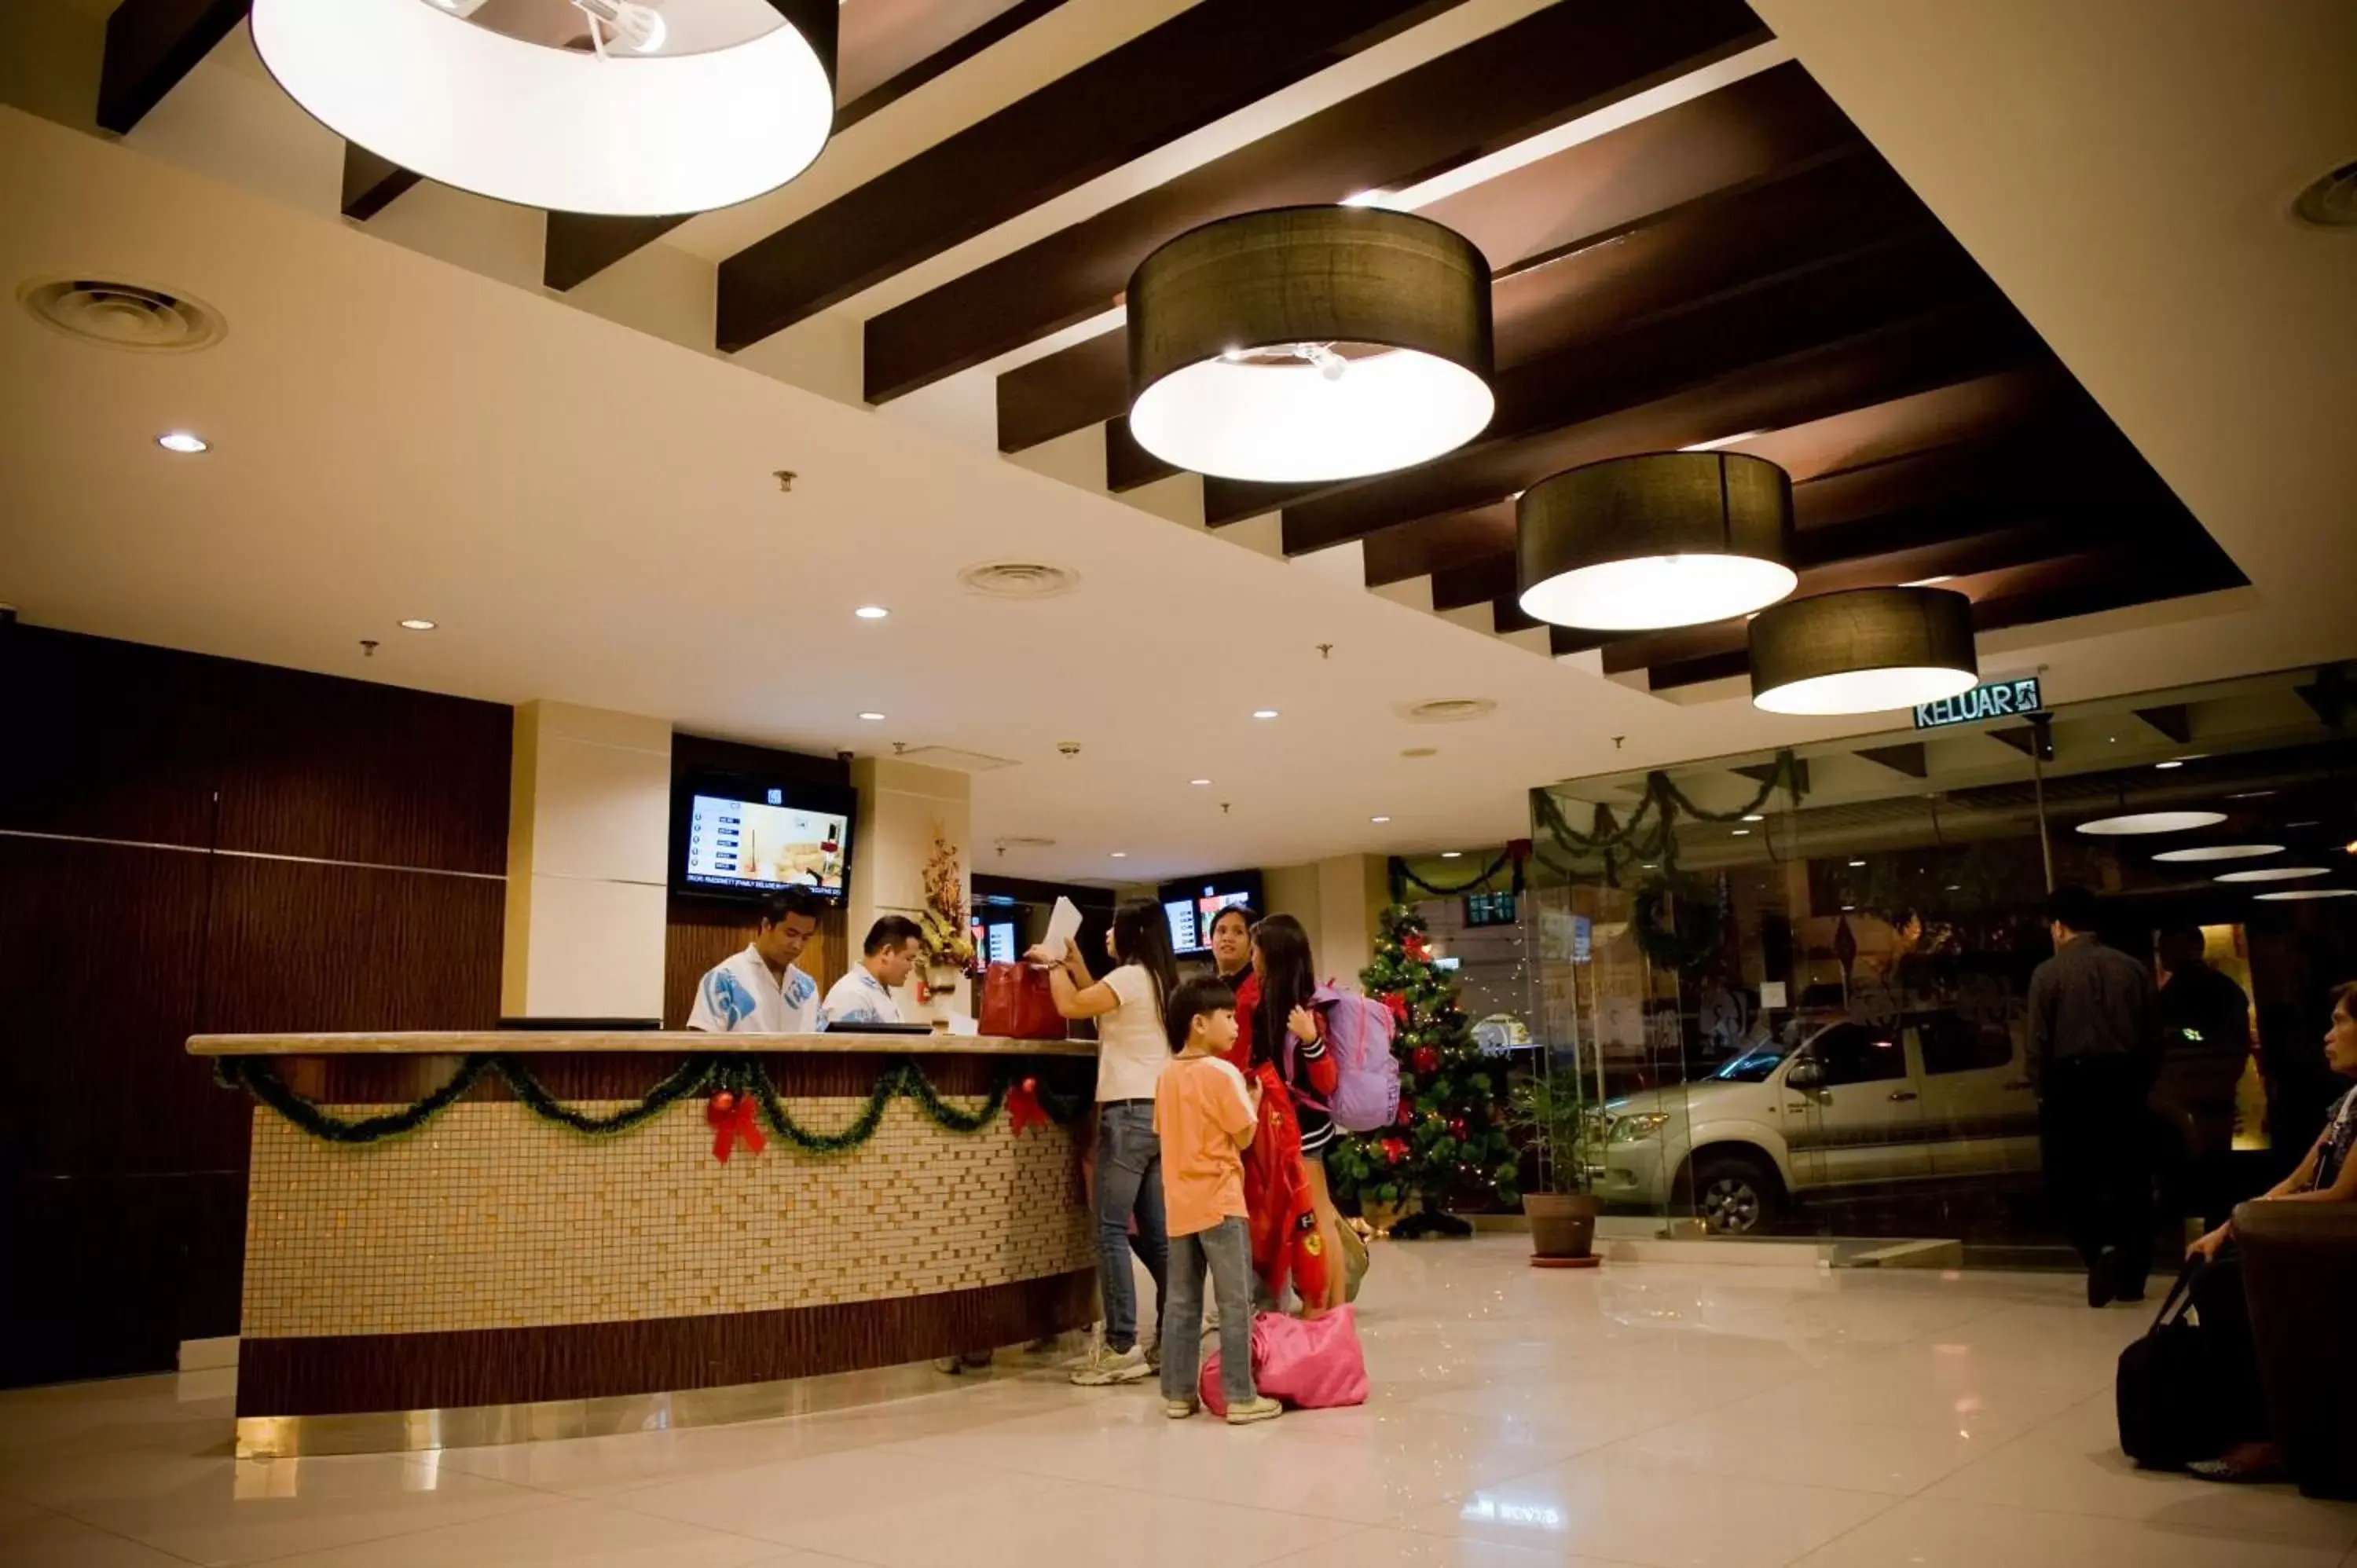 Lobby or reception, Lobby/Reception in Hotel Sixty3